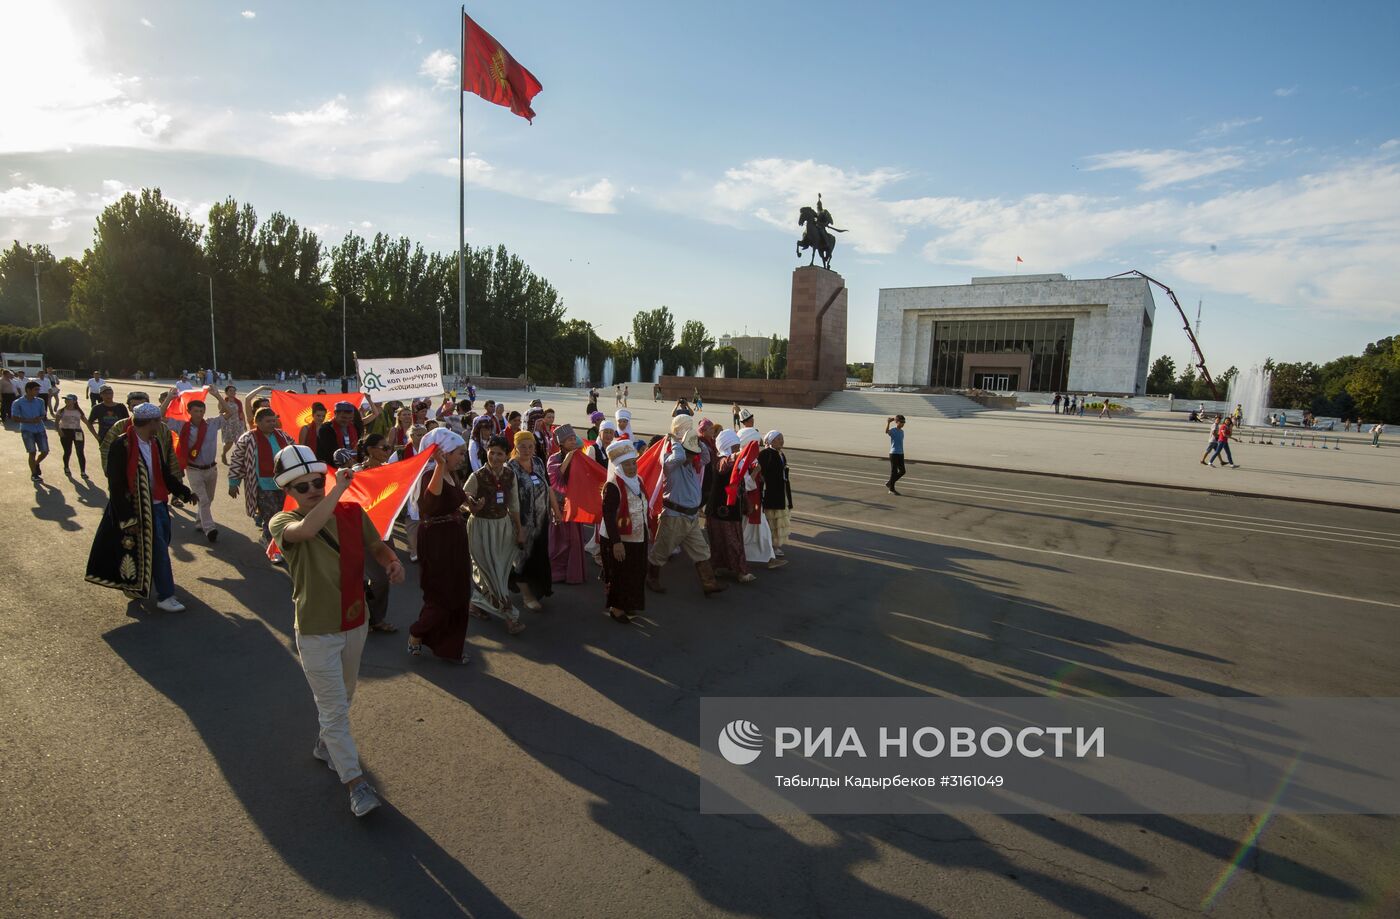 Международный фестиваль "Оймо-2017" в Бишкеке